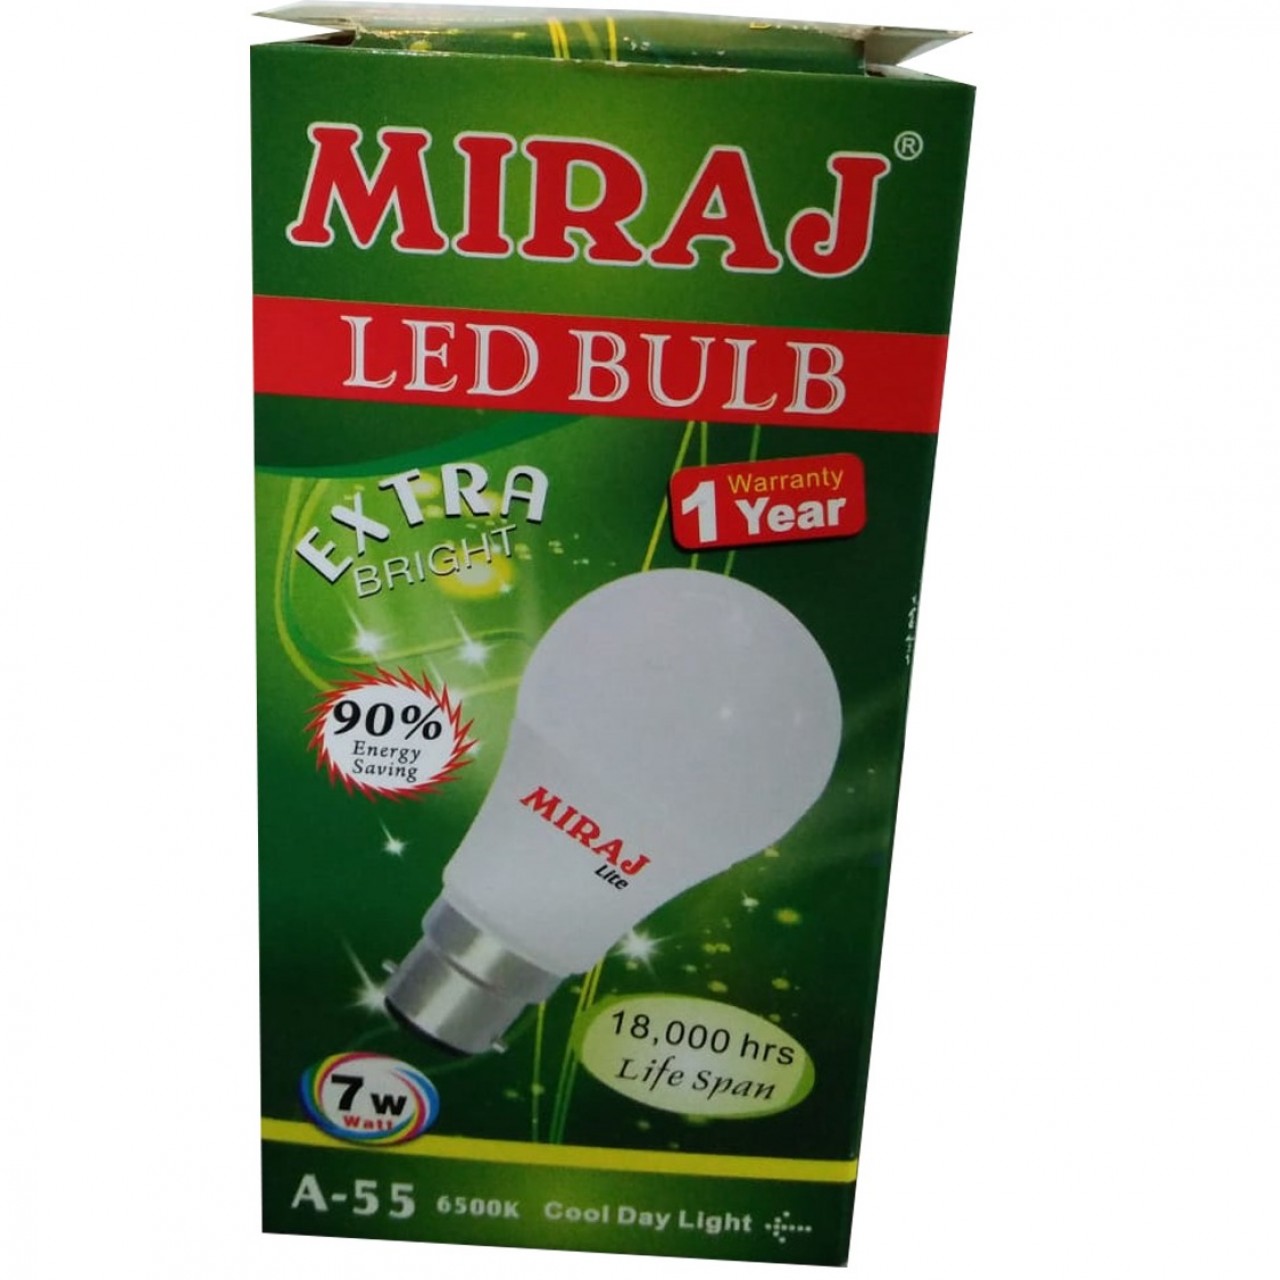 Miraj A-55 Extra Bright LED Bulb - 7W - 1 Year Warranty